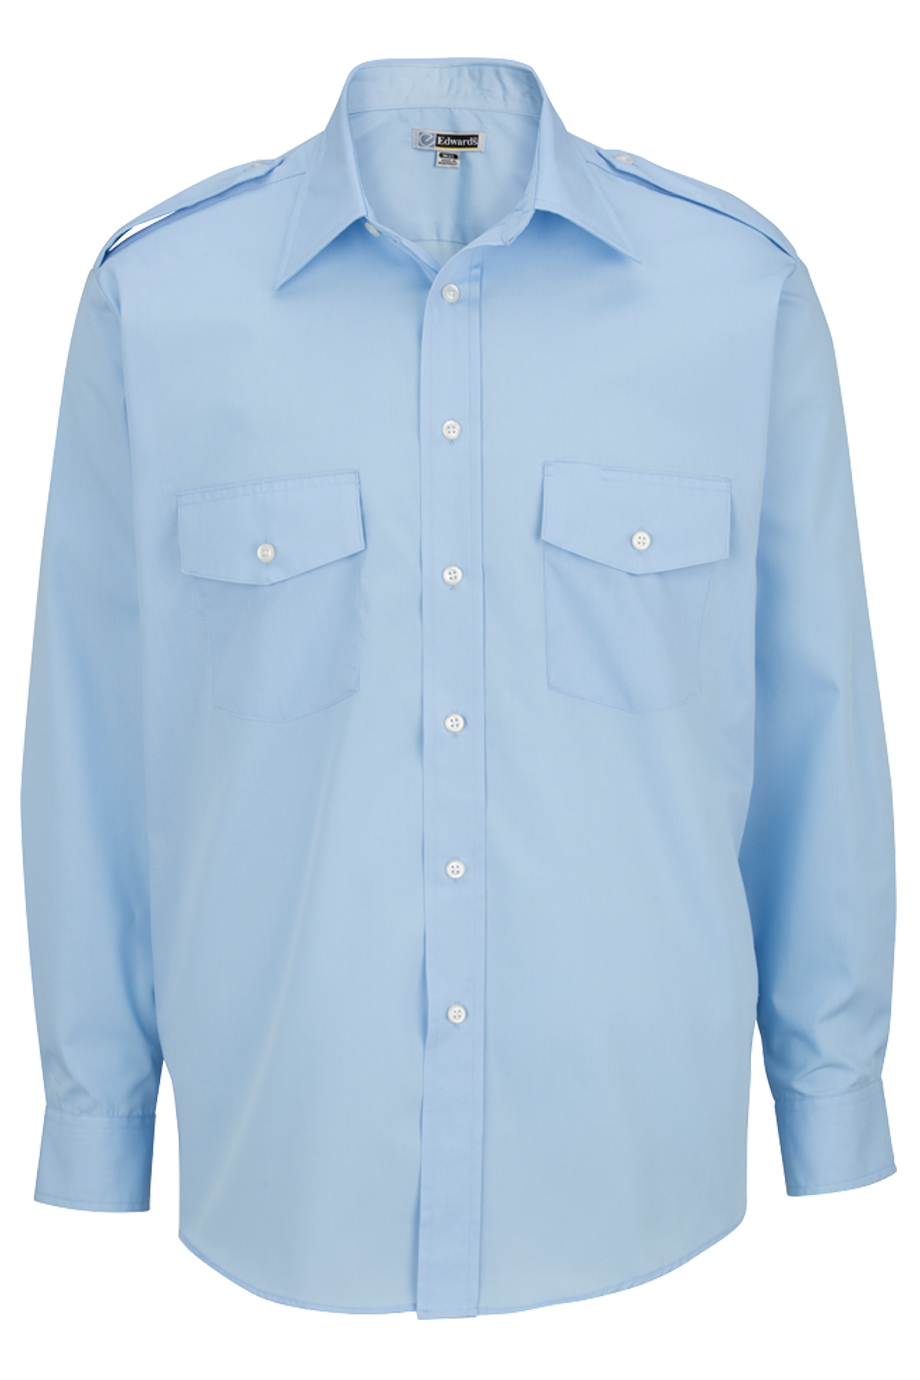 Men's Navigator Shirt - Long Sleeve 1262